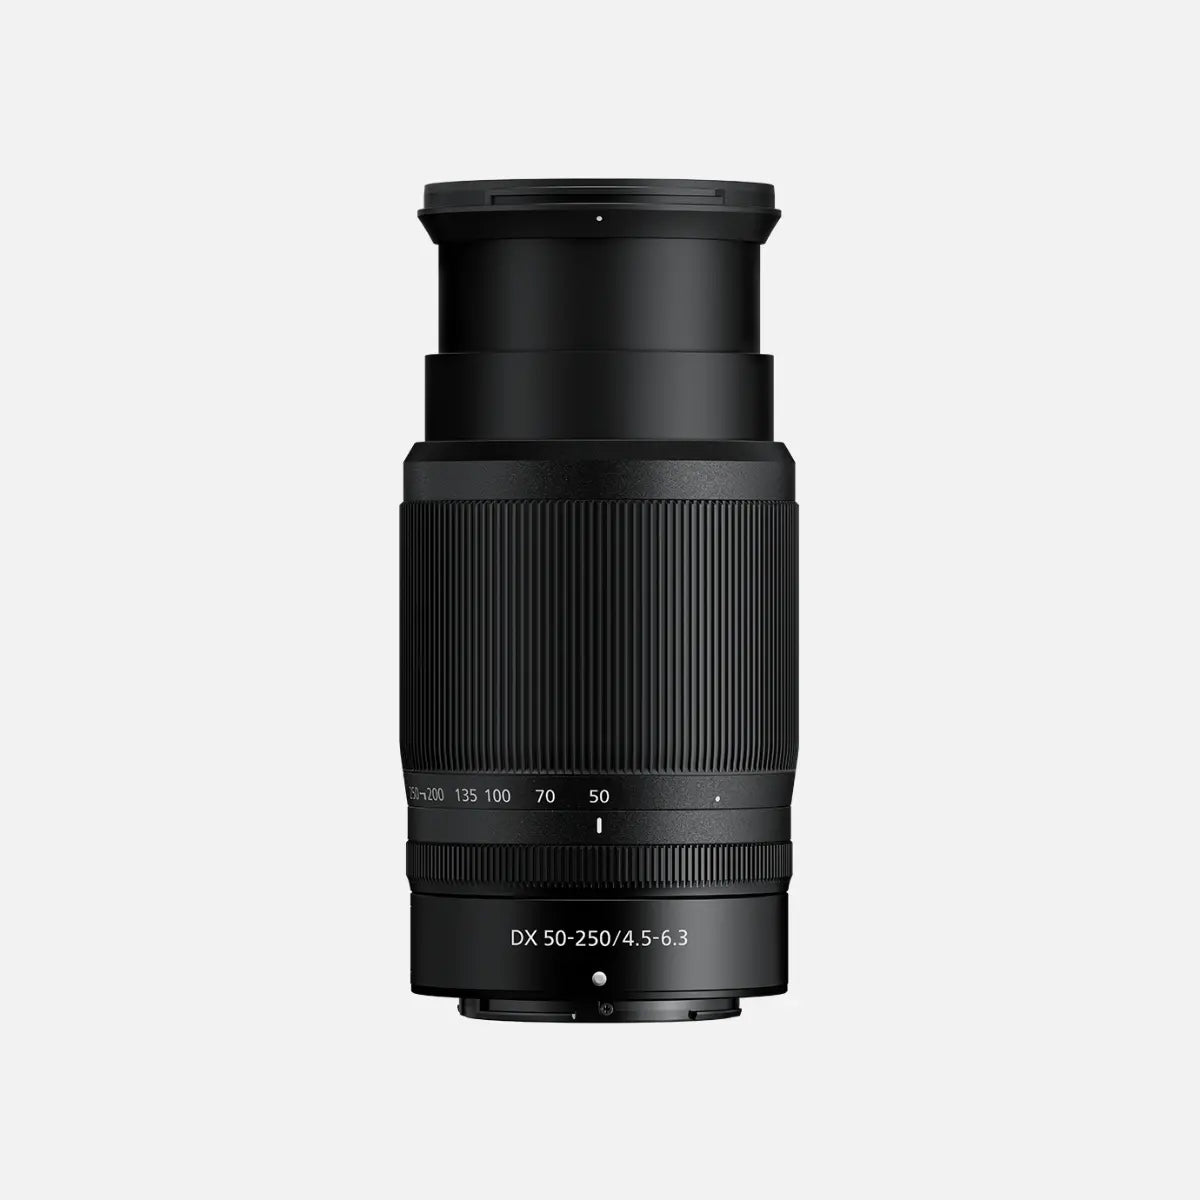 未使用品】Nikon Z DX 50-250mm f4.5-6.3 VR - レンズ(ズーム)